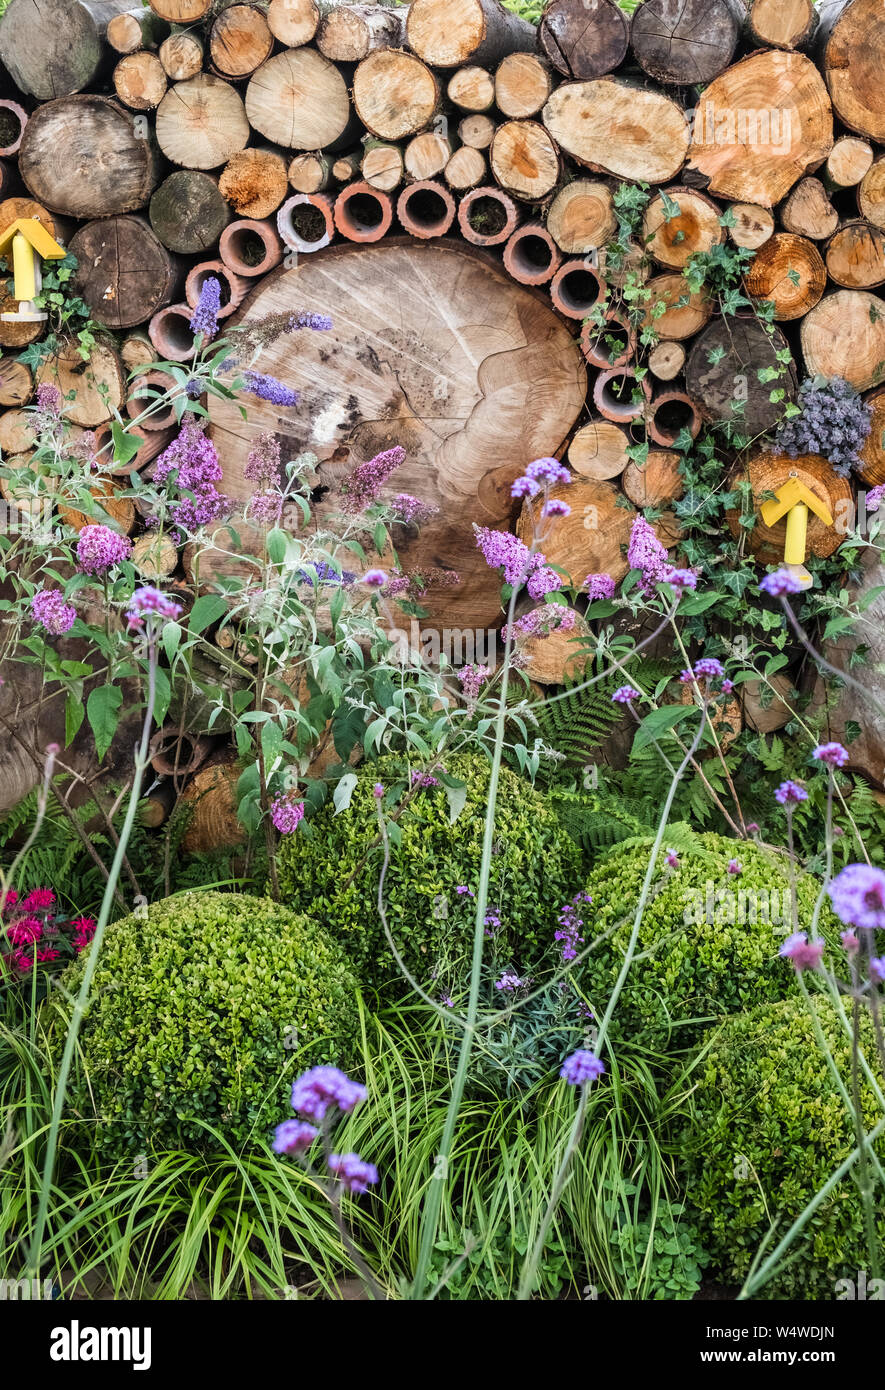 Anzeigen Garten in Tatton Park Flower Show, 2019, die Tierwelt. Funktionen wie Baumstämmen und Bambus Stöcke für Insekten, Cheshire, Großbritannien Stockfoto